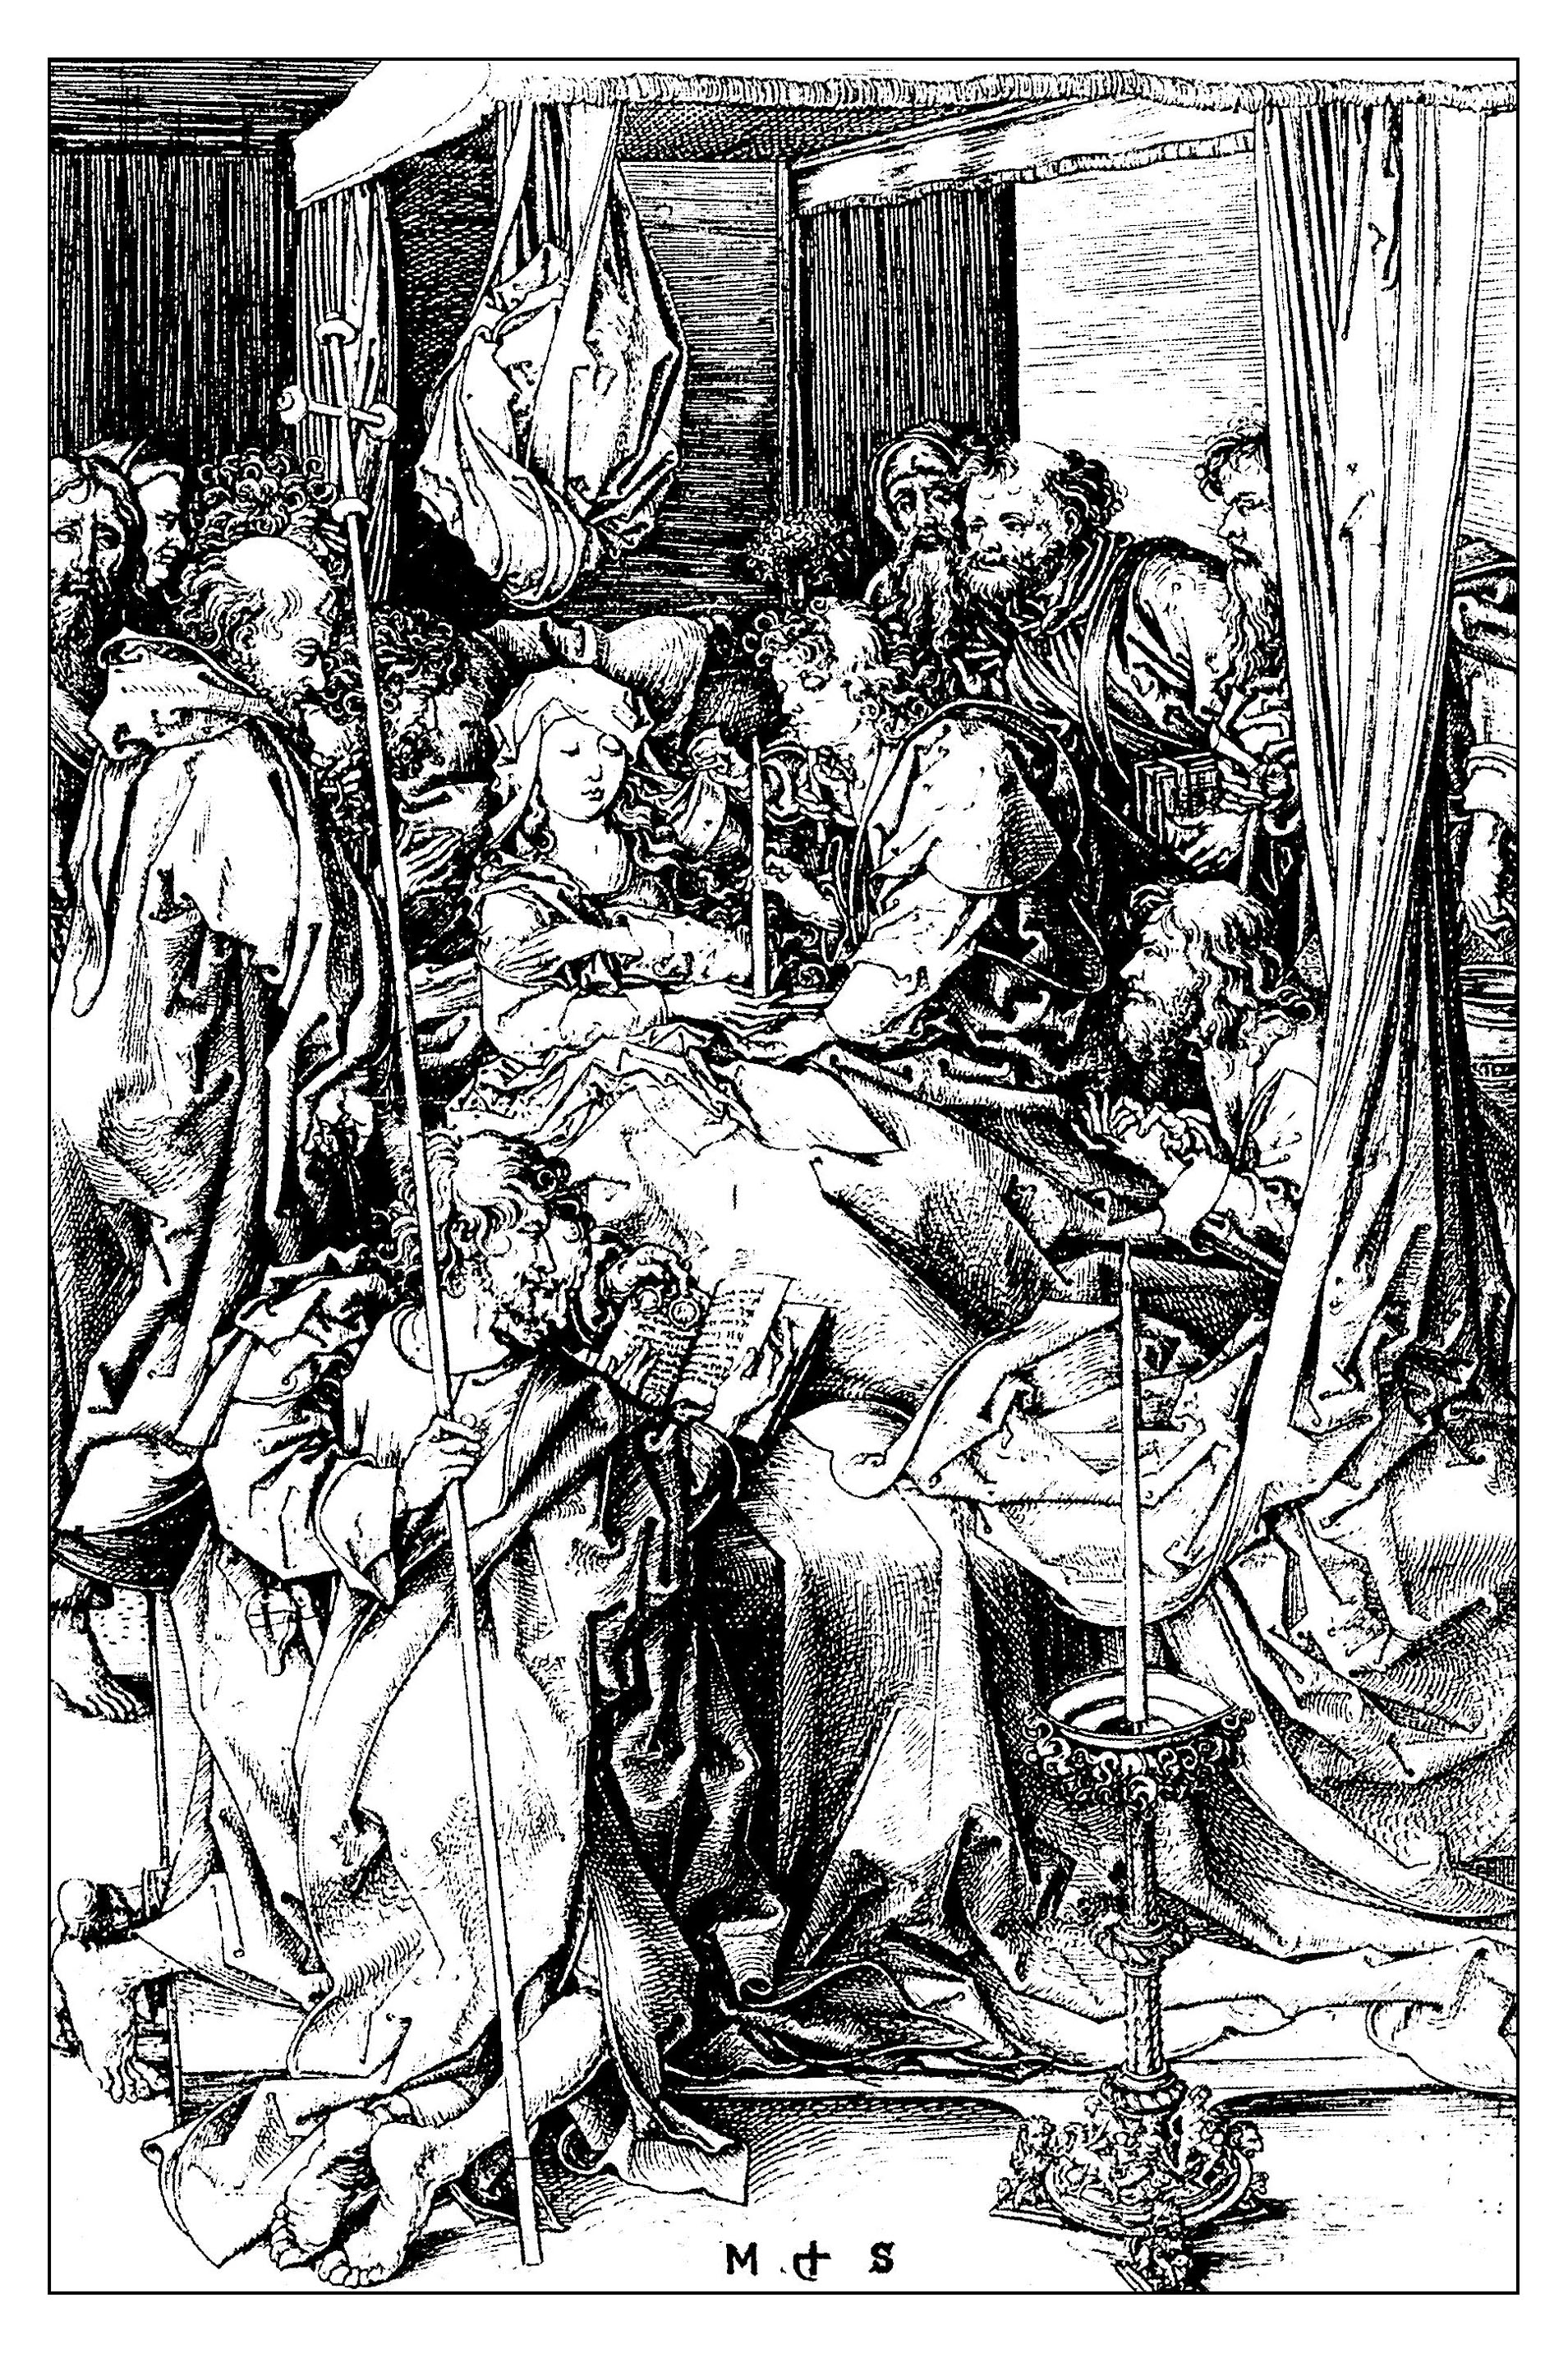 Pour gravure martin schongauer la mort de la vierge vers 1470 gratuit a imprimer